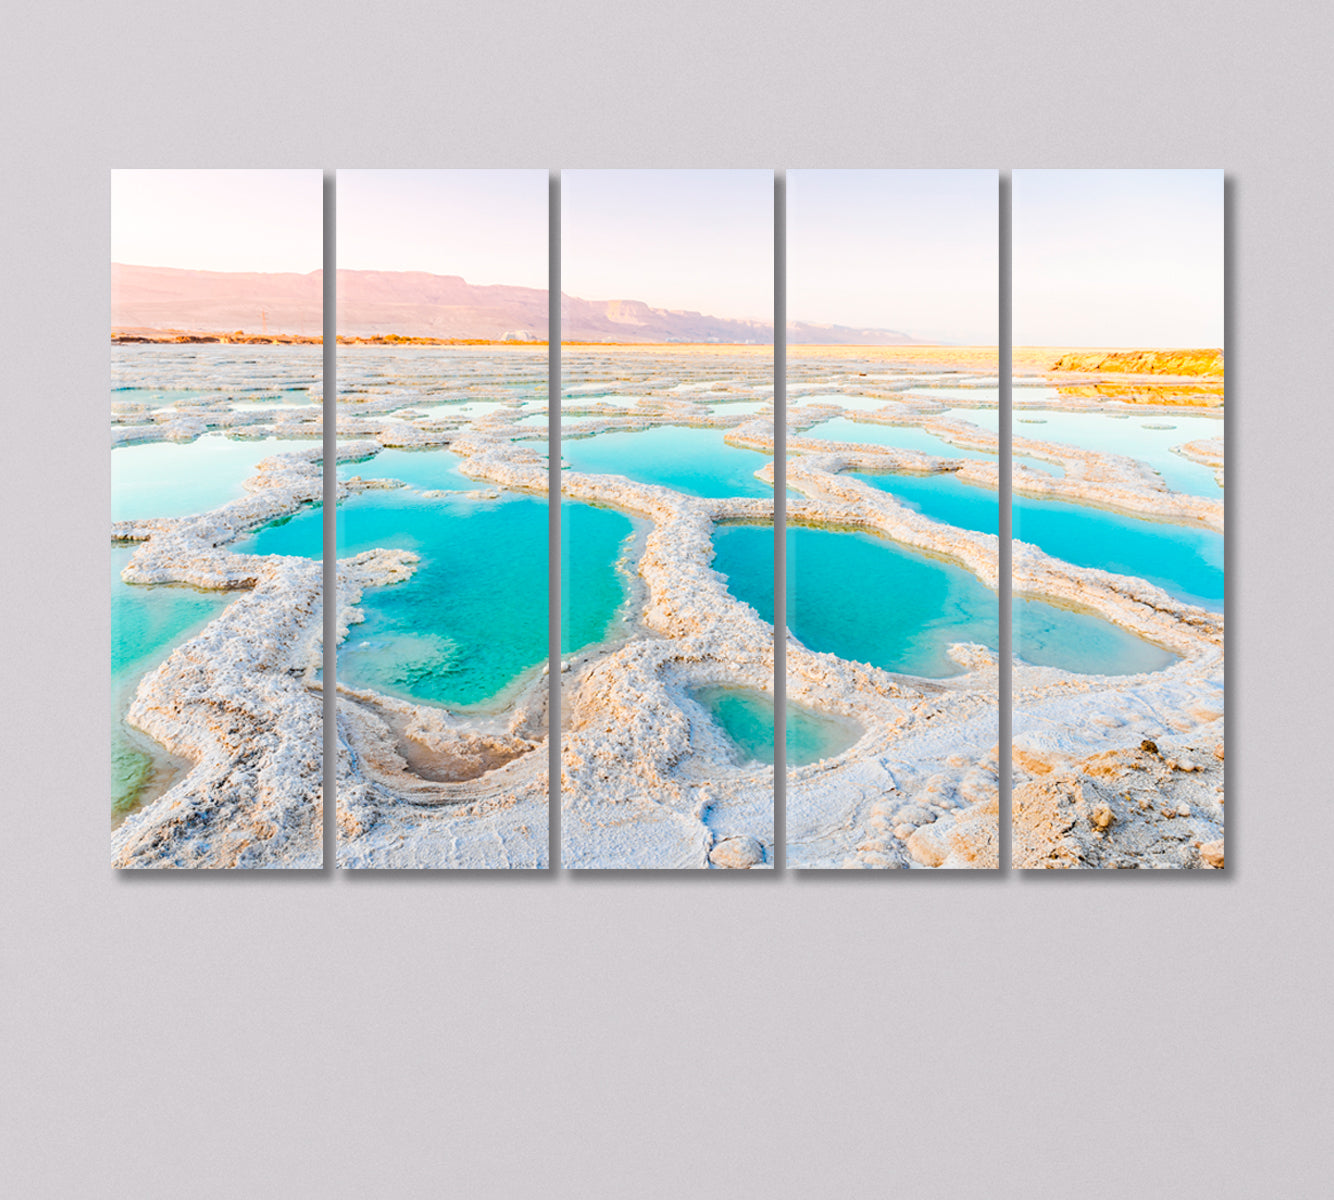 Dead Sea Coast Canvas Print-Canvas Print-CetArt-5 Panels-36x24 inches-CetArt